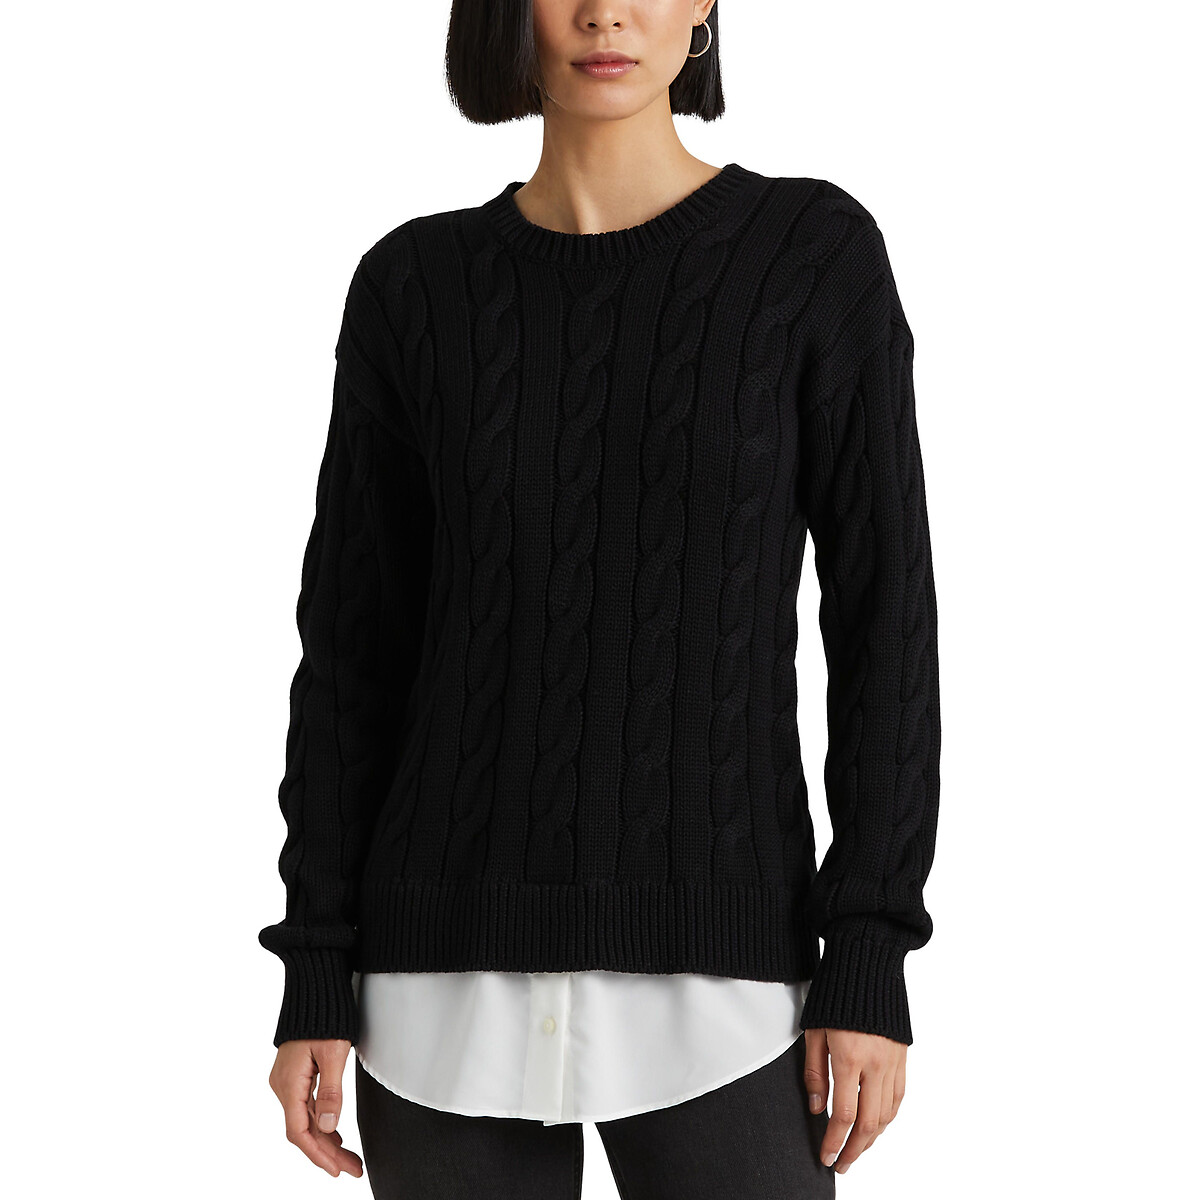 Пуловер с круглым вырезом из плетеного трикотажа S черный пуловер с круглым вырезом из трикотажа меланж с кашемиром l черный